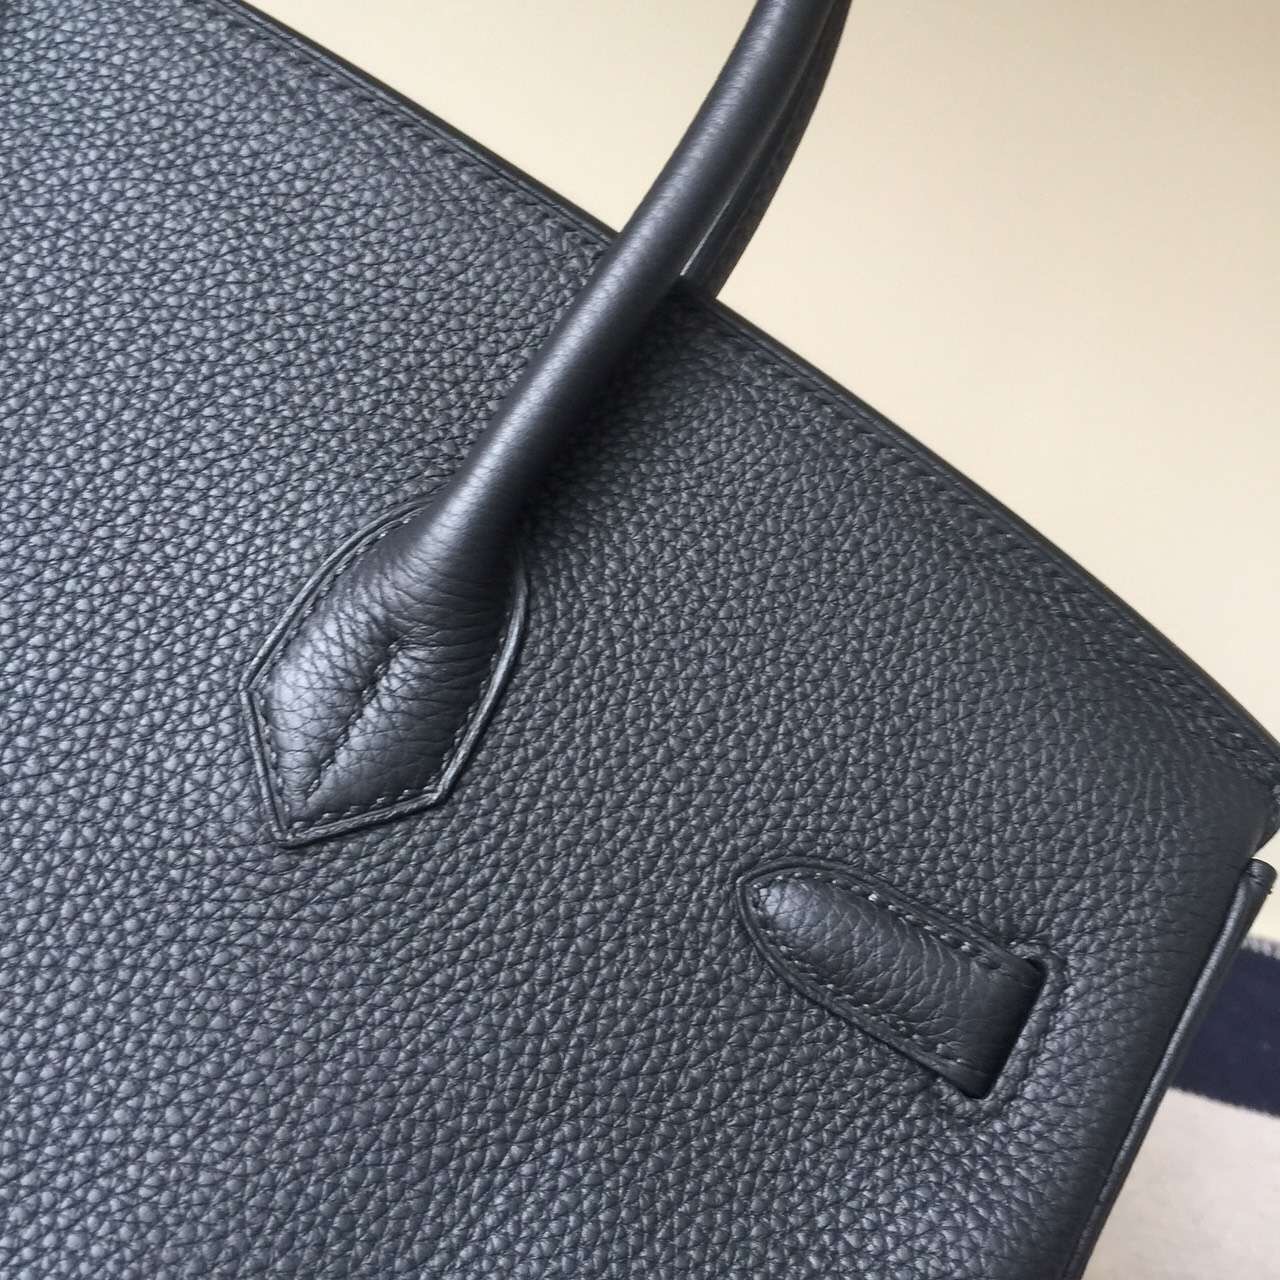 Hermes Classic Bag CK89 Black Togo Leather Birkin Bag 35cm